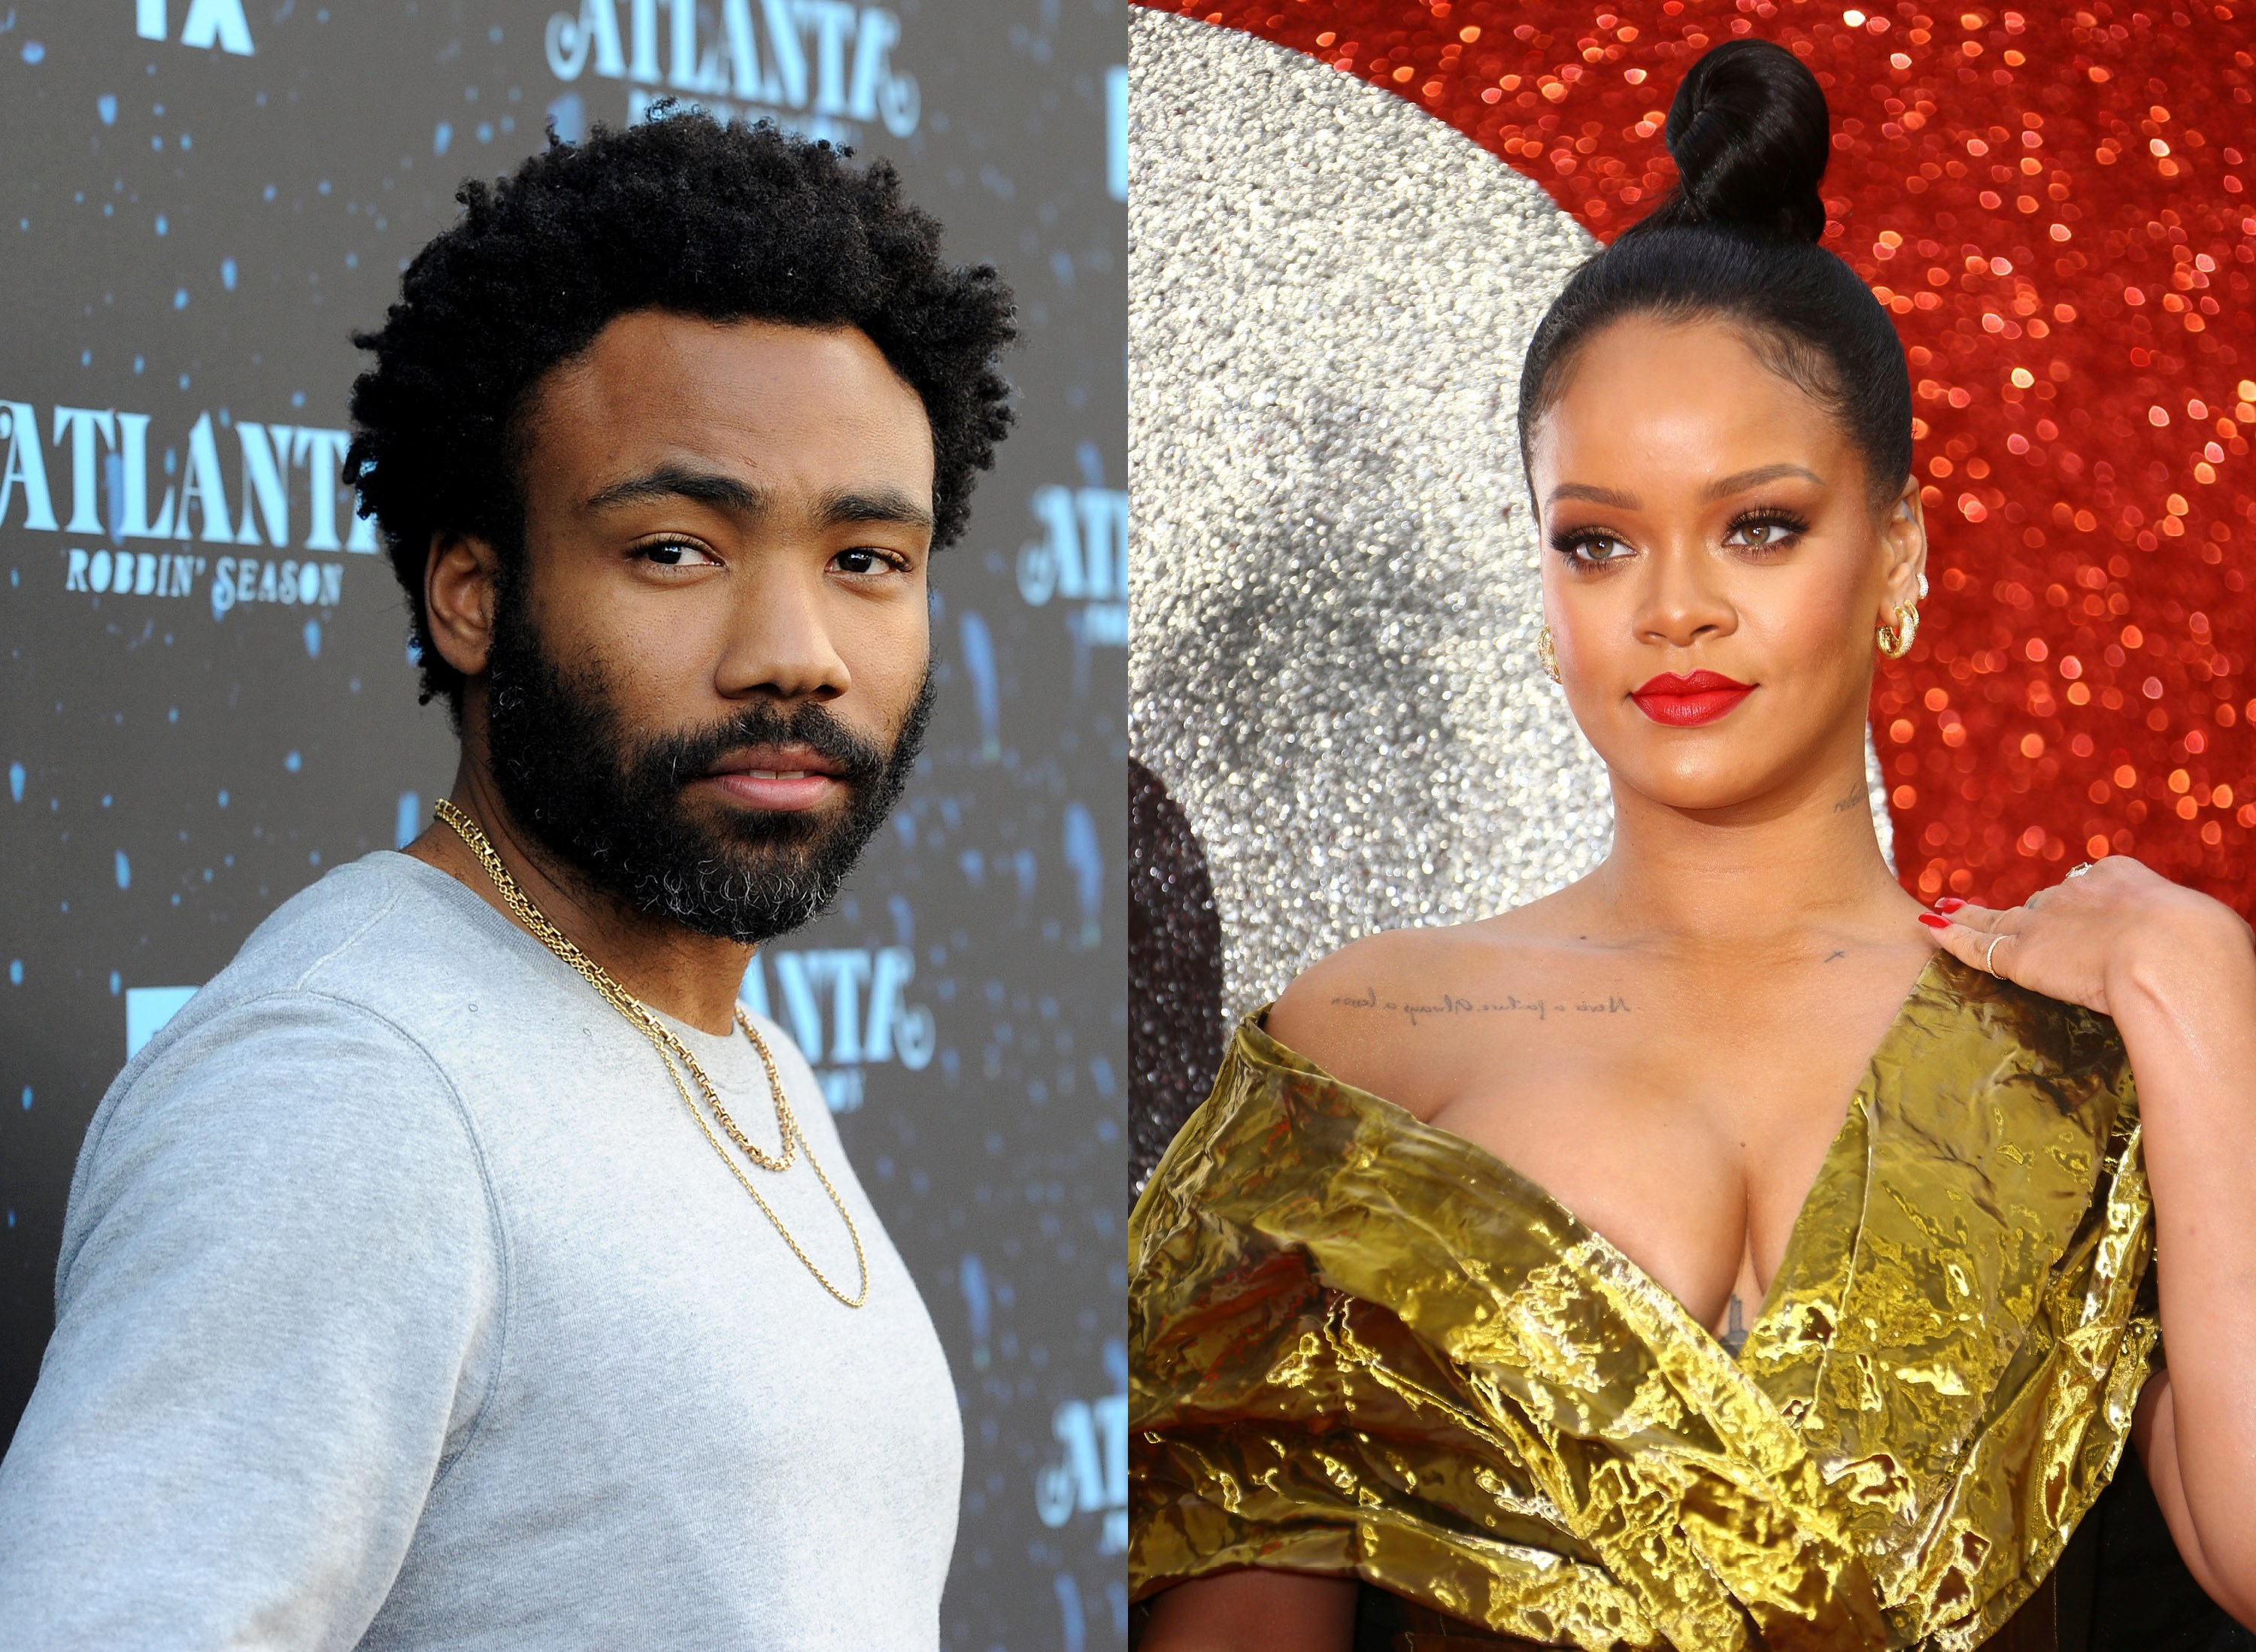 Filme misterioso de Rihanna e Donald Glover ganha trailer em festival de música